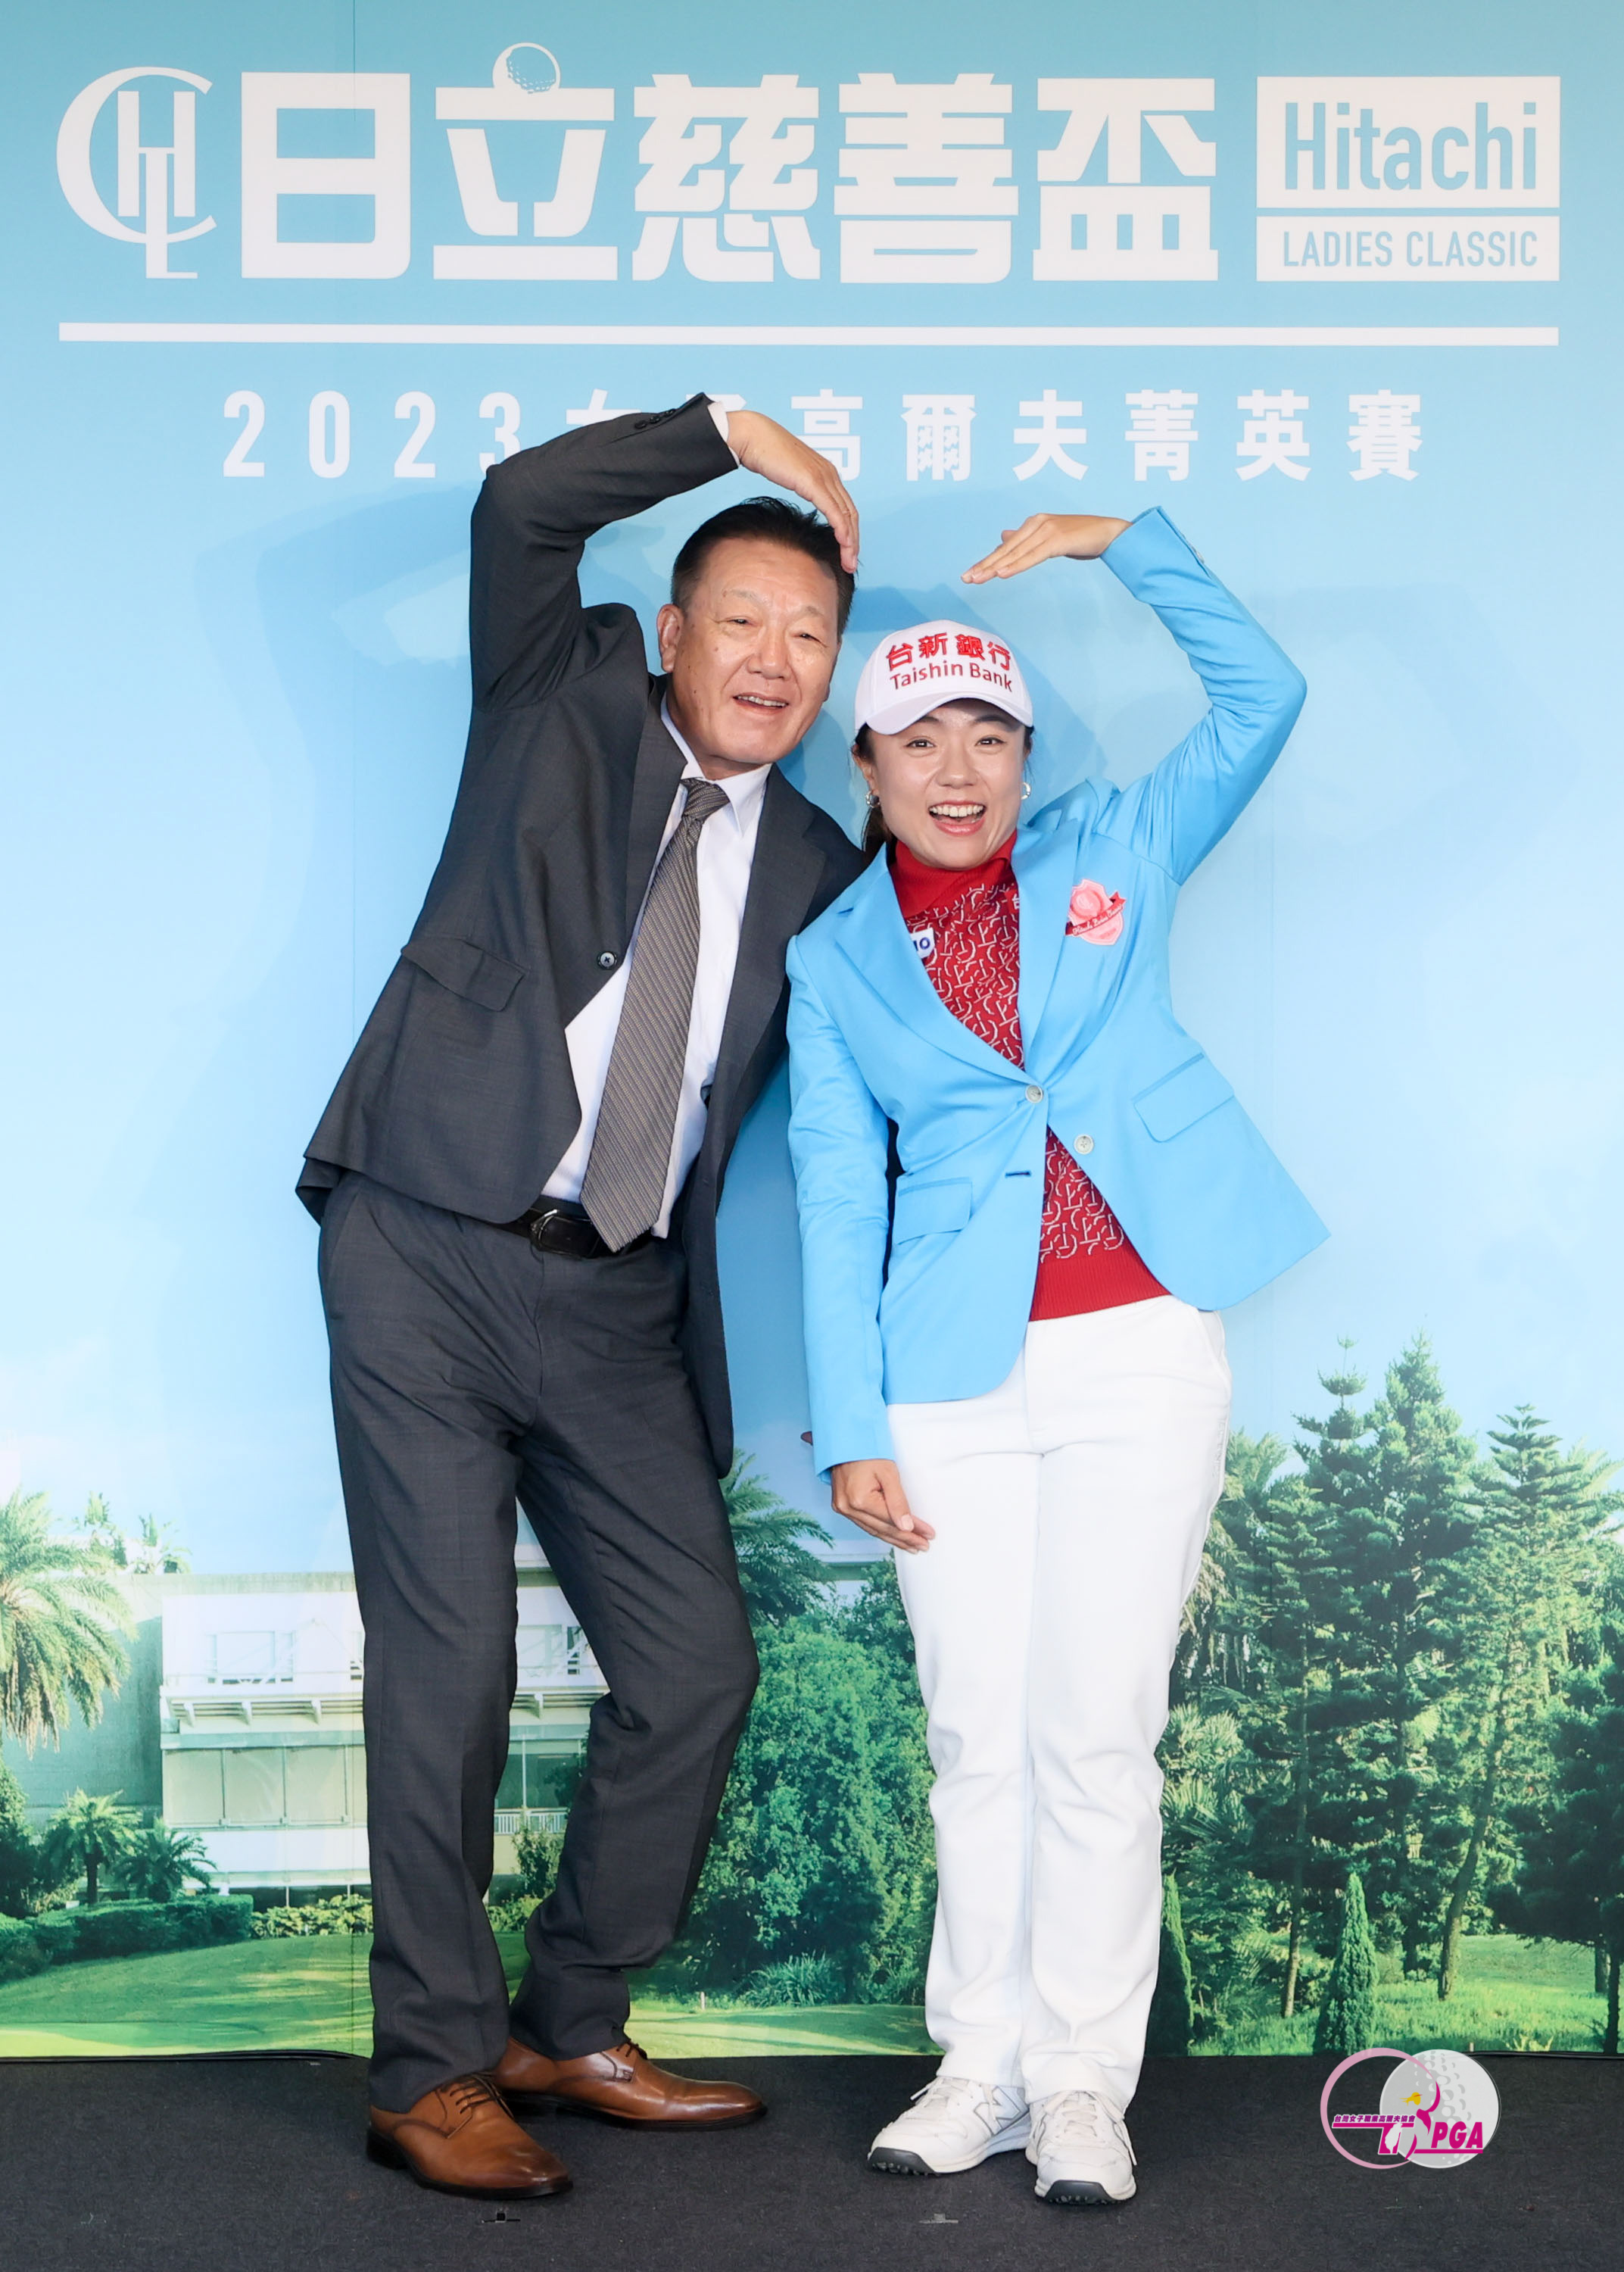 台灣日立江森自控股份有限公司董事長菊地正幸(左)為2022冠軍選手蔡佩穎(右)。TLPGA提供